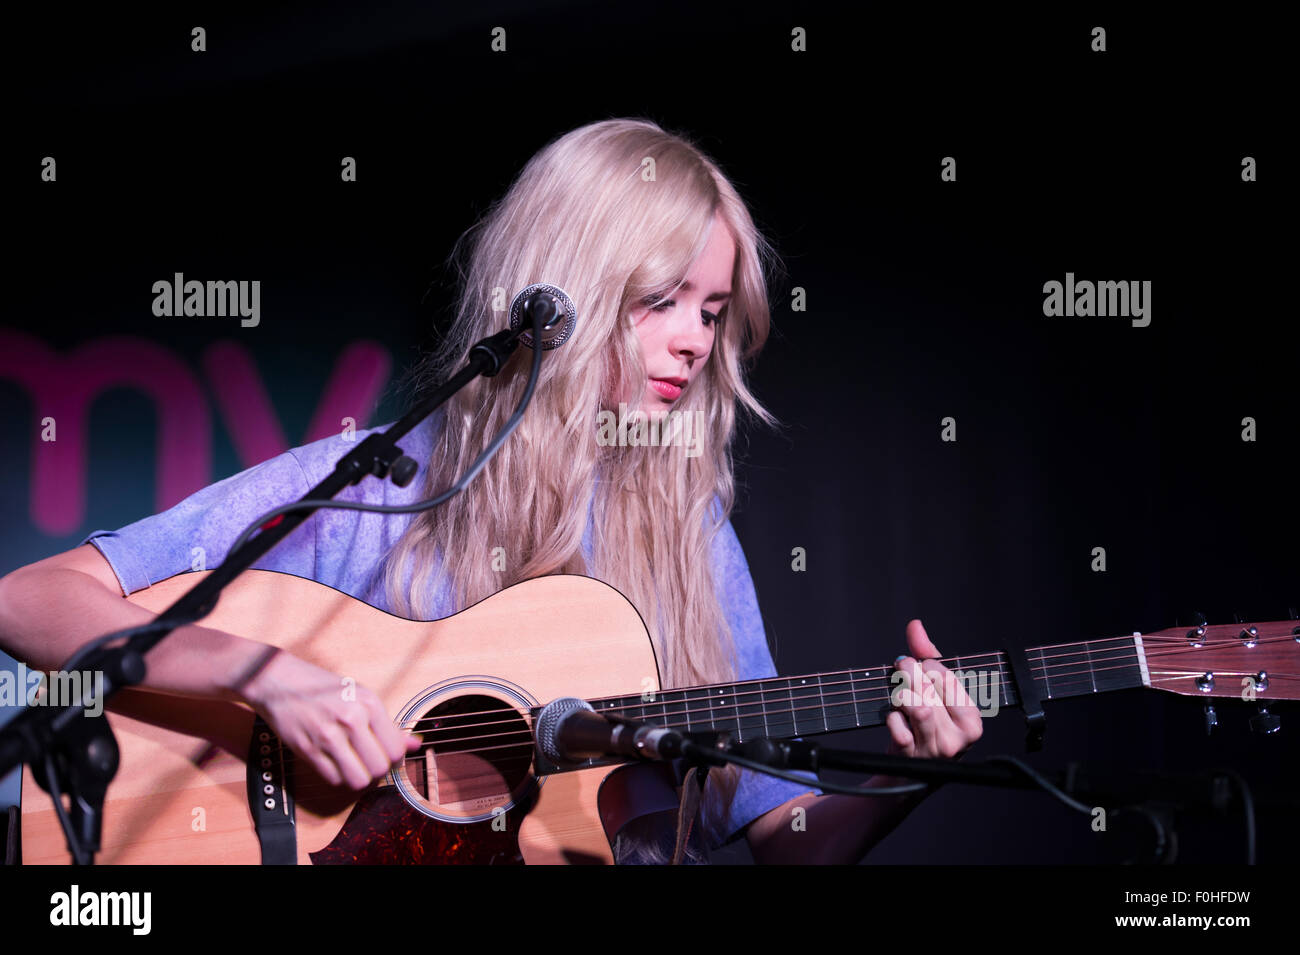 Scottish singer/songwriter Nina Nesbitt in concert at HMV London. Stock Photo